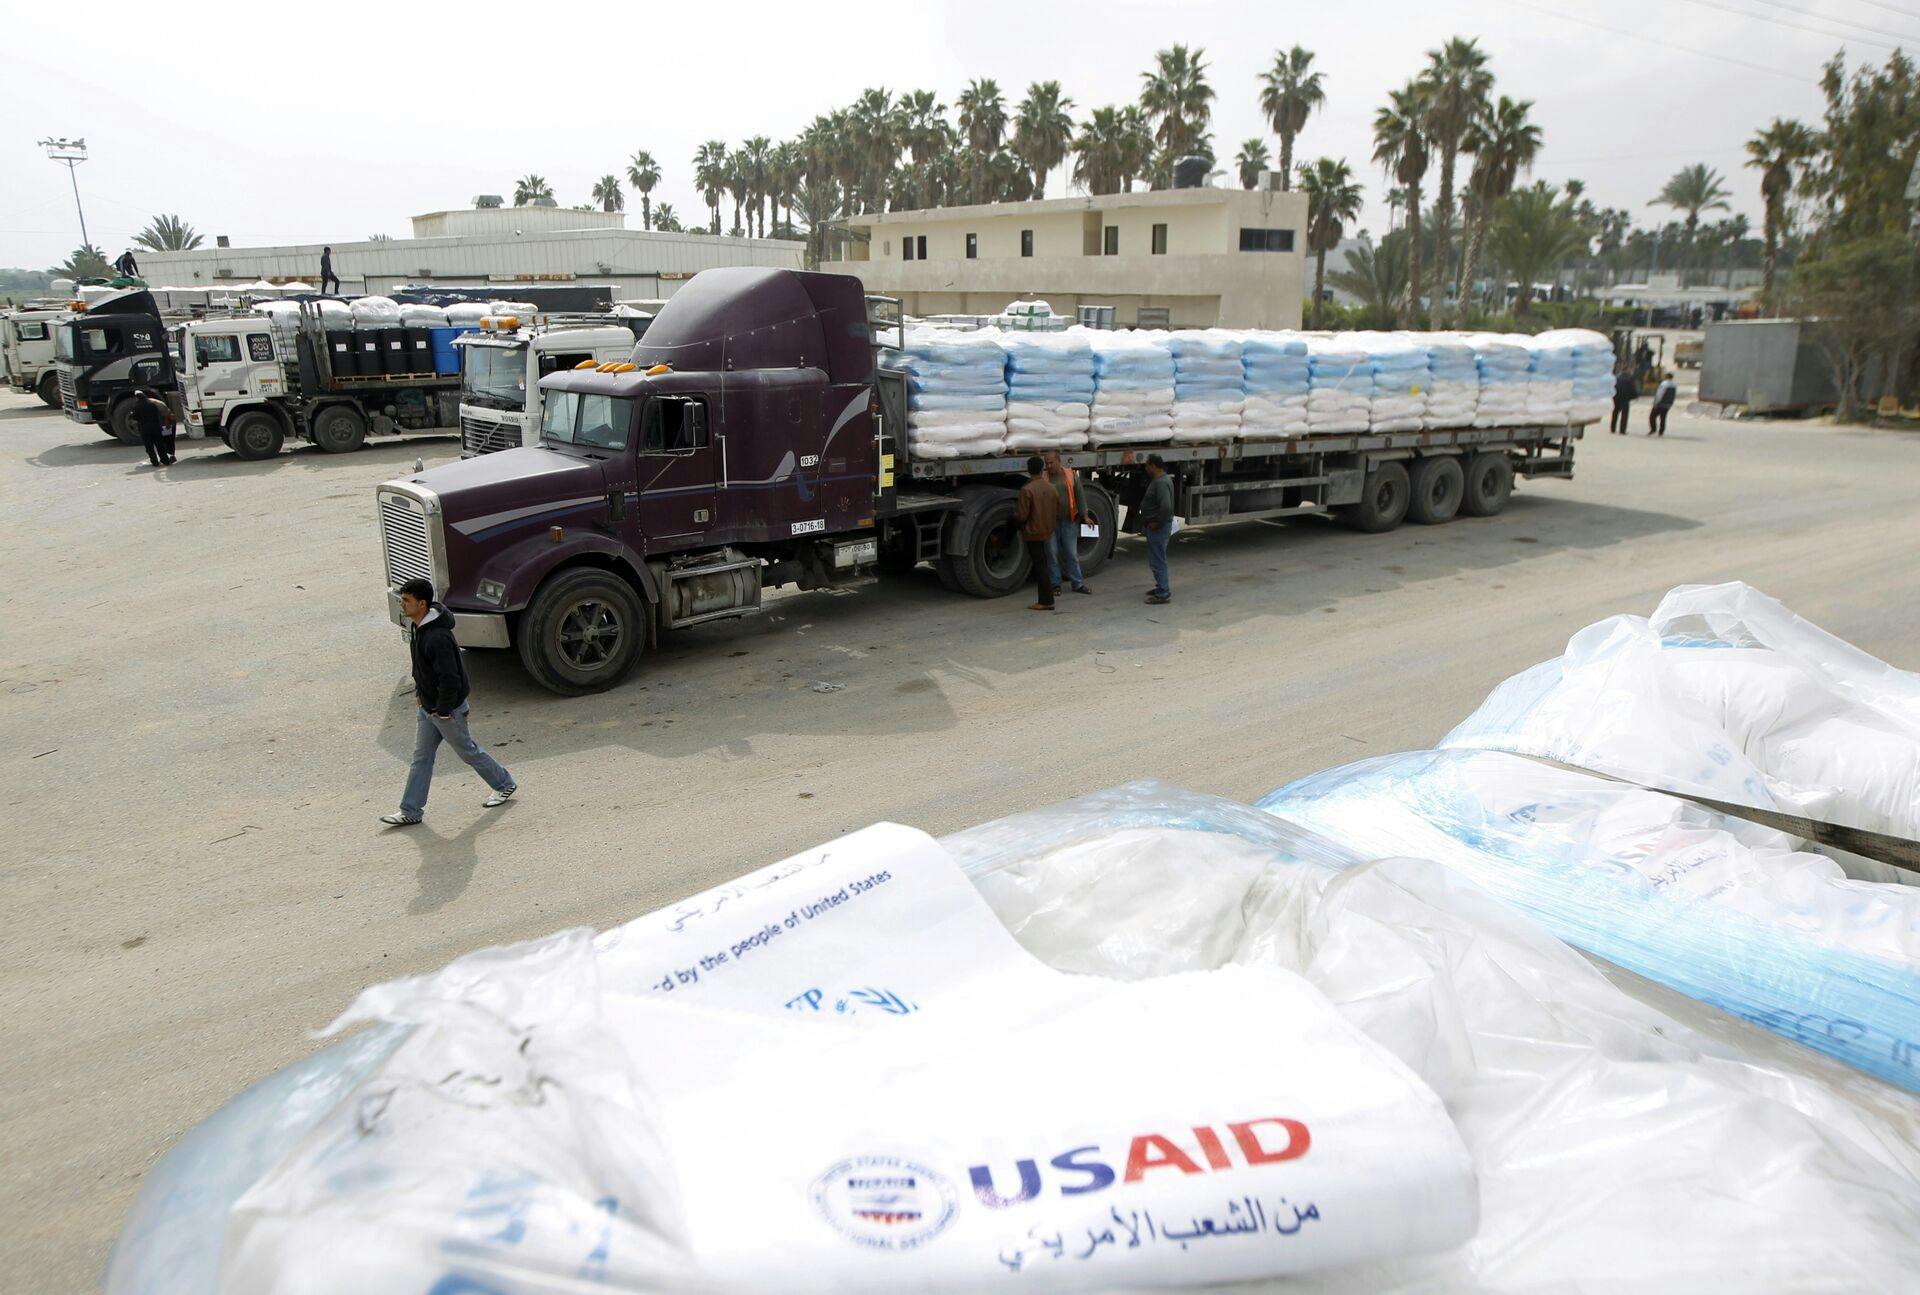 Det er transporter som disse, at Israel har gjort det både meget besværligt og livsfarligt at få ind til de sultende beboere i Gaza.